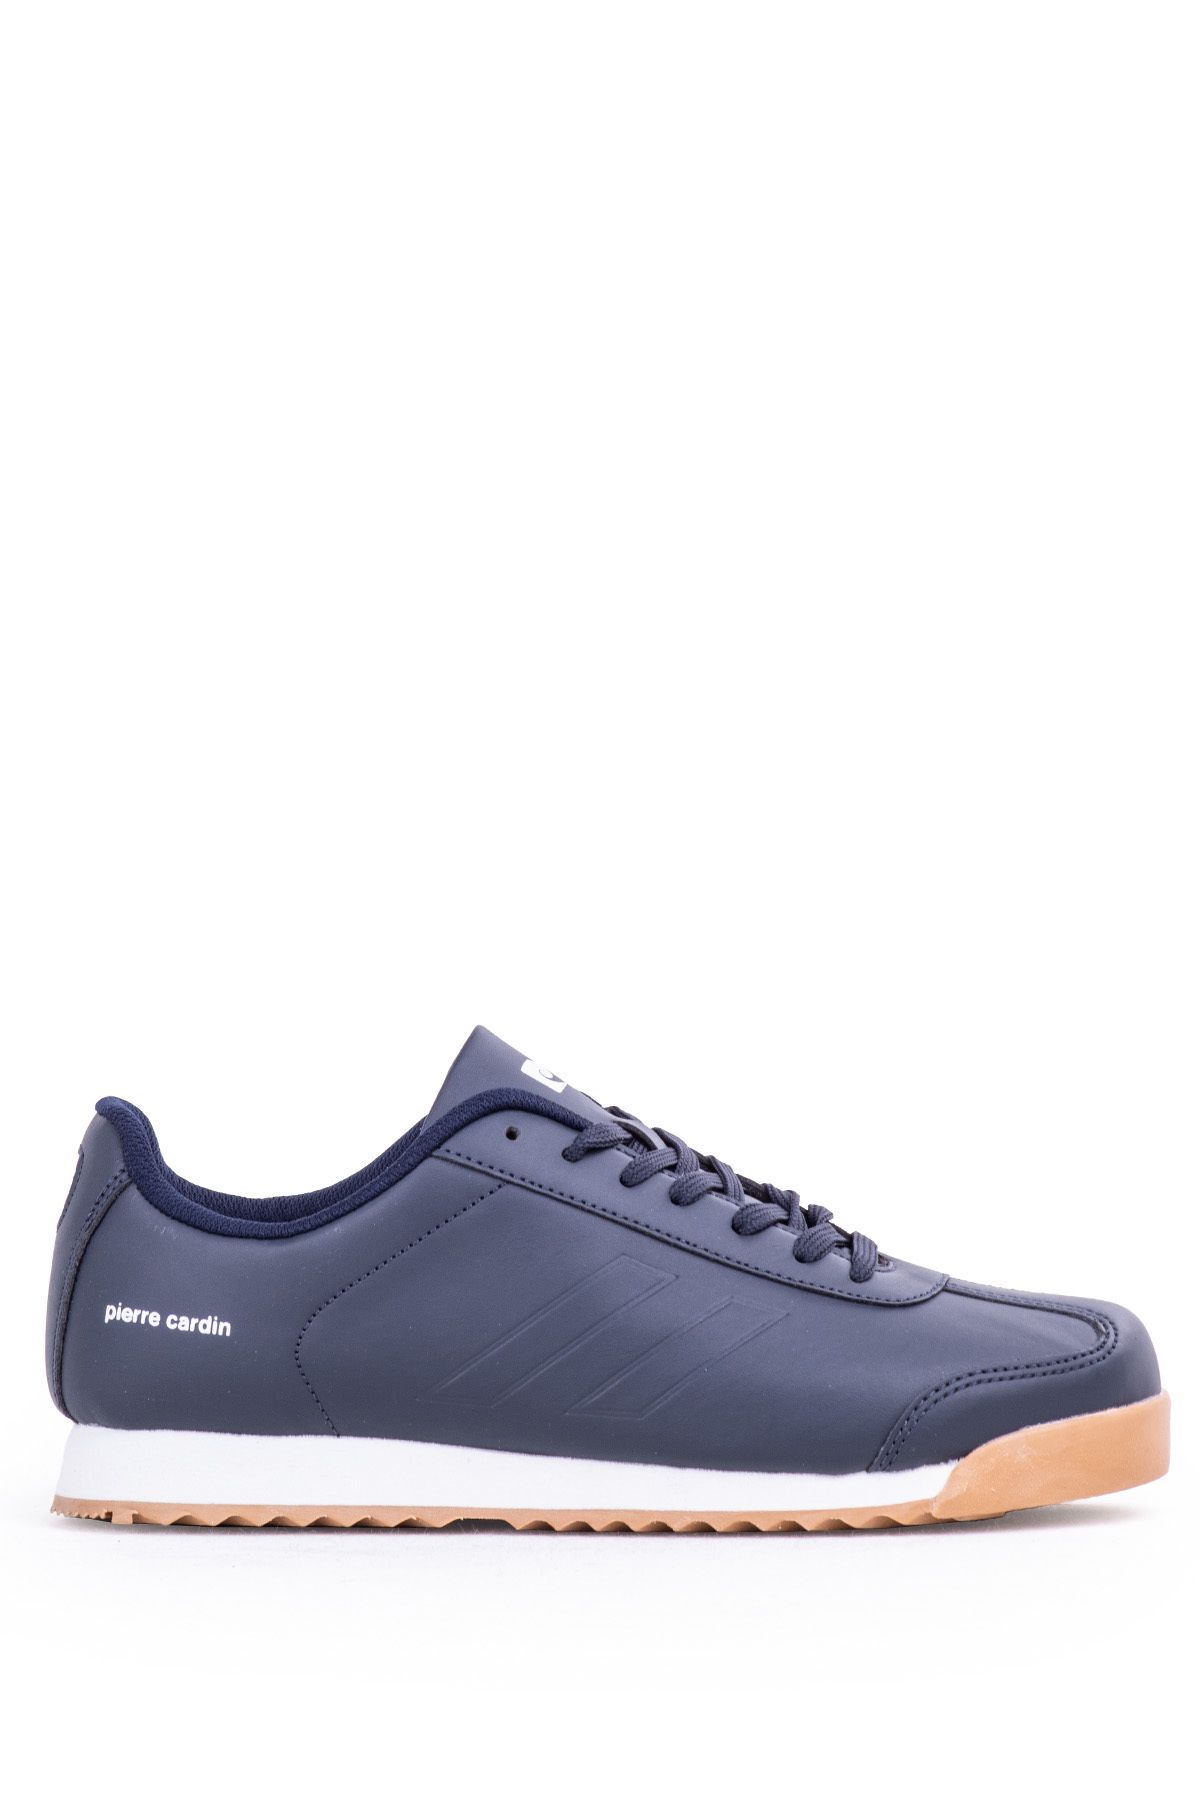 Pierre Cardin Erkek Günlük Spor Ayakkabı Günlük Erkek Spor Ayakkabı Erkek Sneaker PC30484